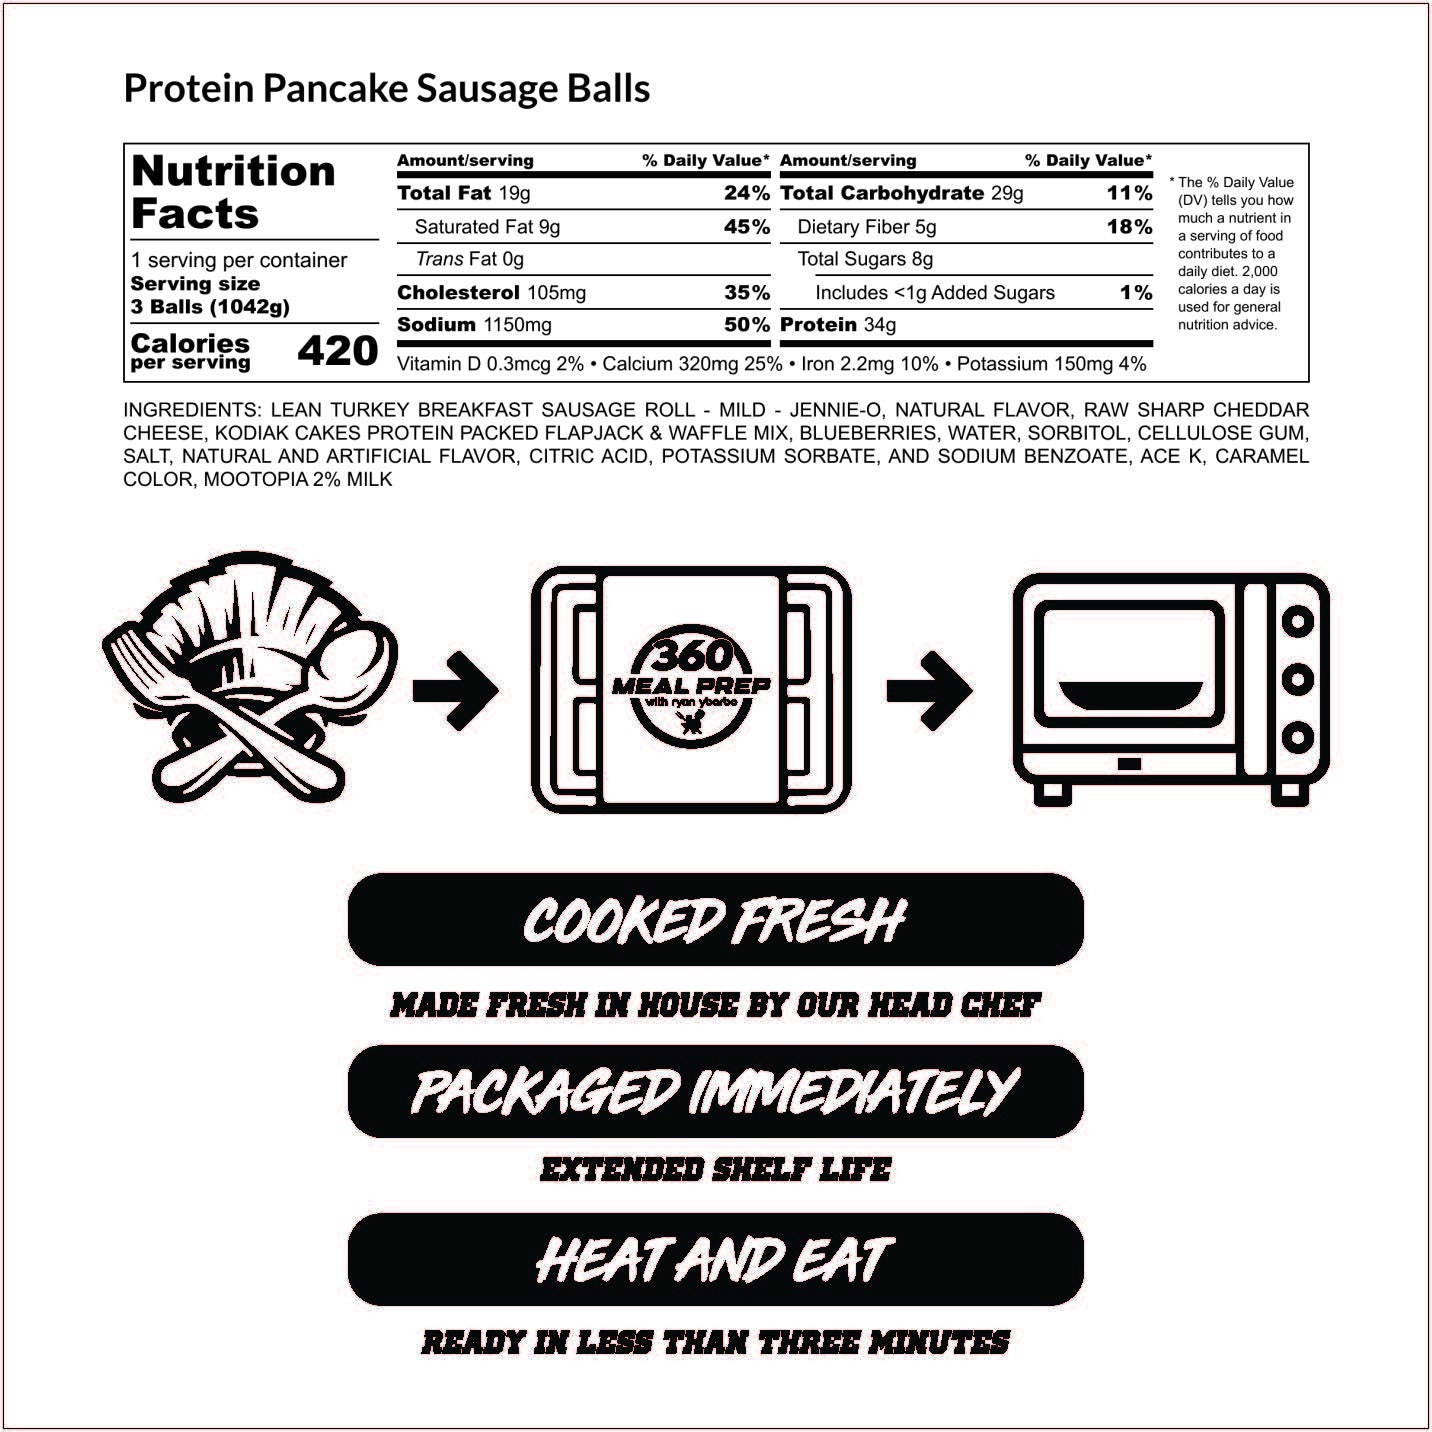 Protein Pancake Sausage Balls